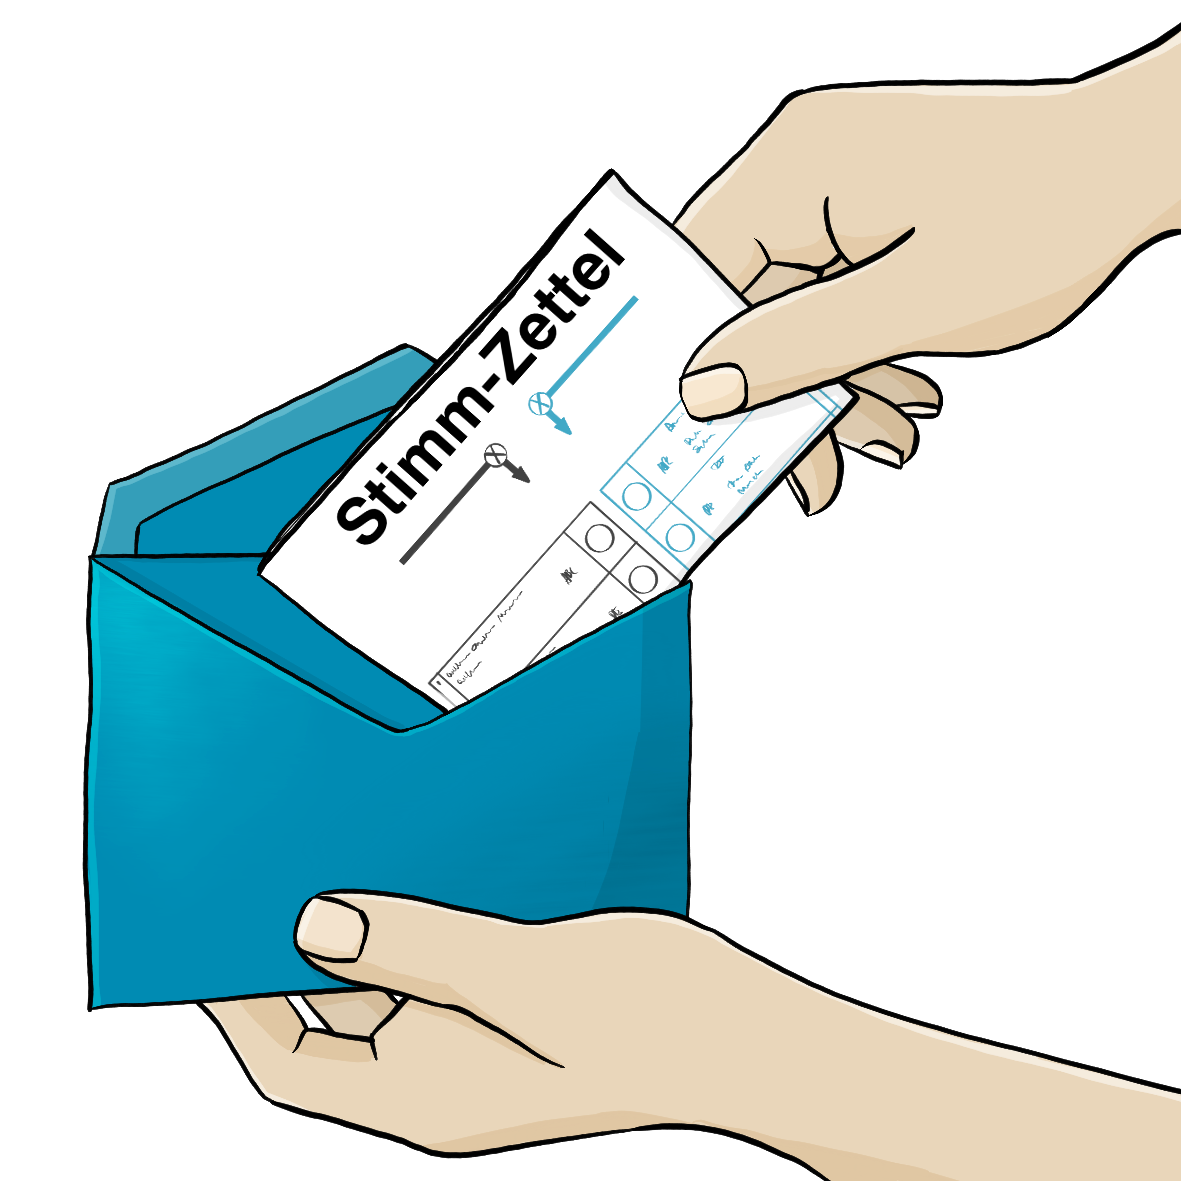 Eine Hand steckt einen Stimmzettel in einen blauen Briefumschlag. Das Wort Stimmzettel ist durch einen Bindestrich getrennt.